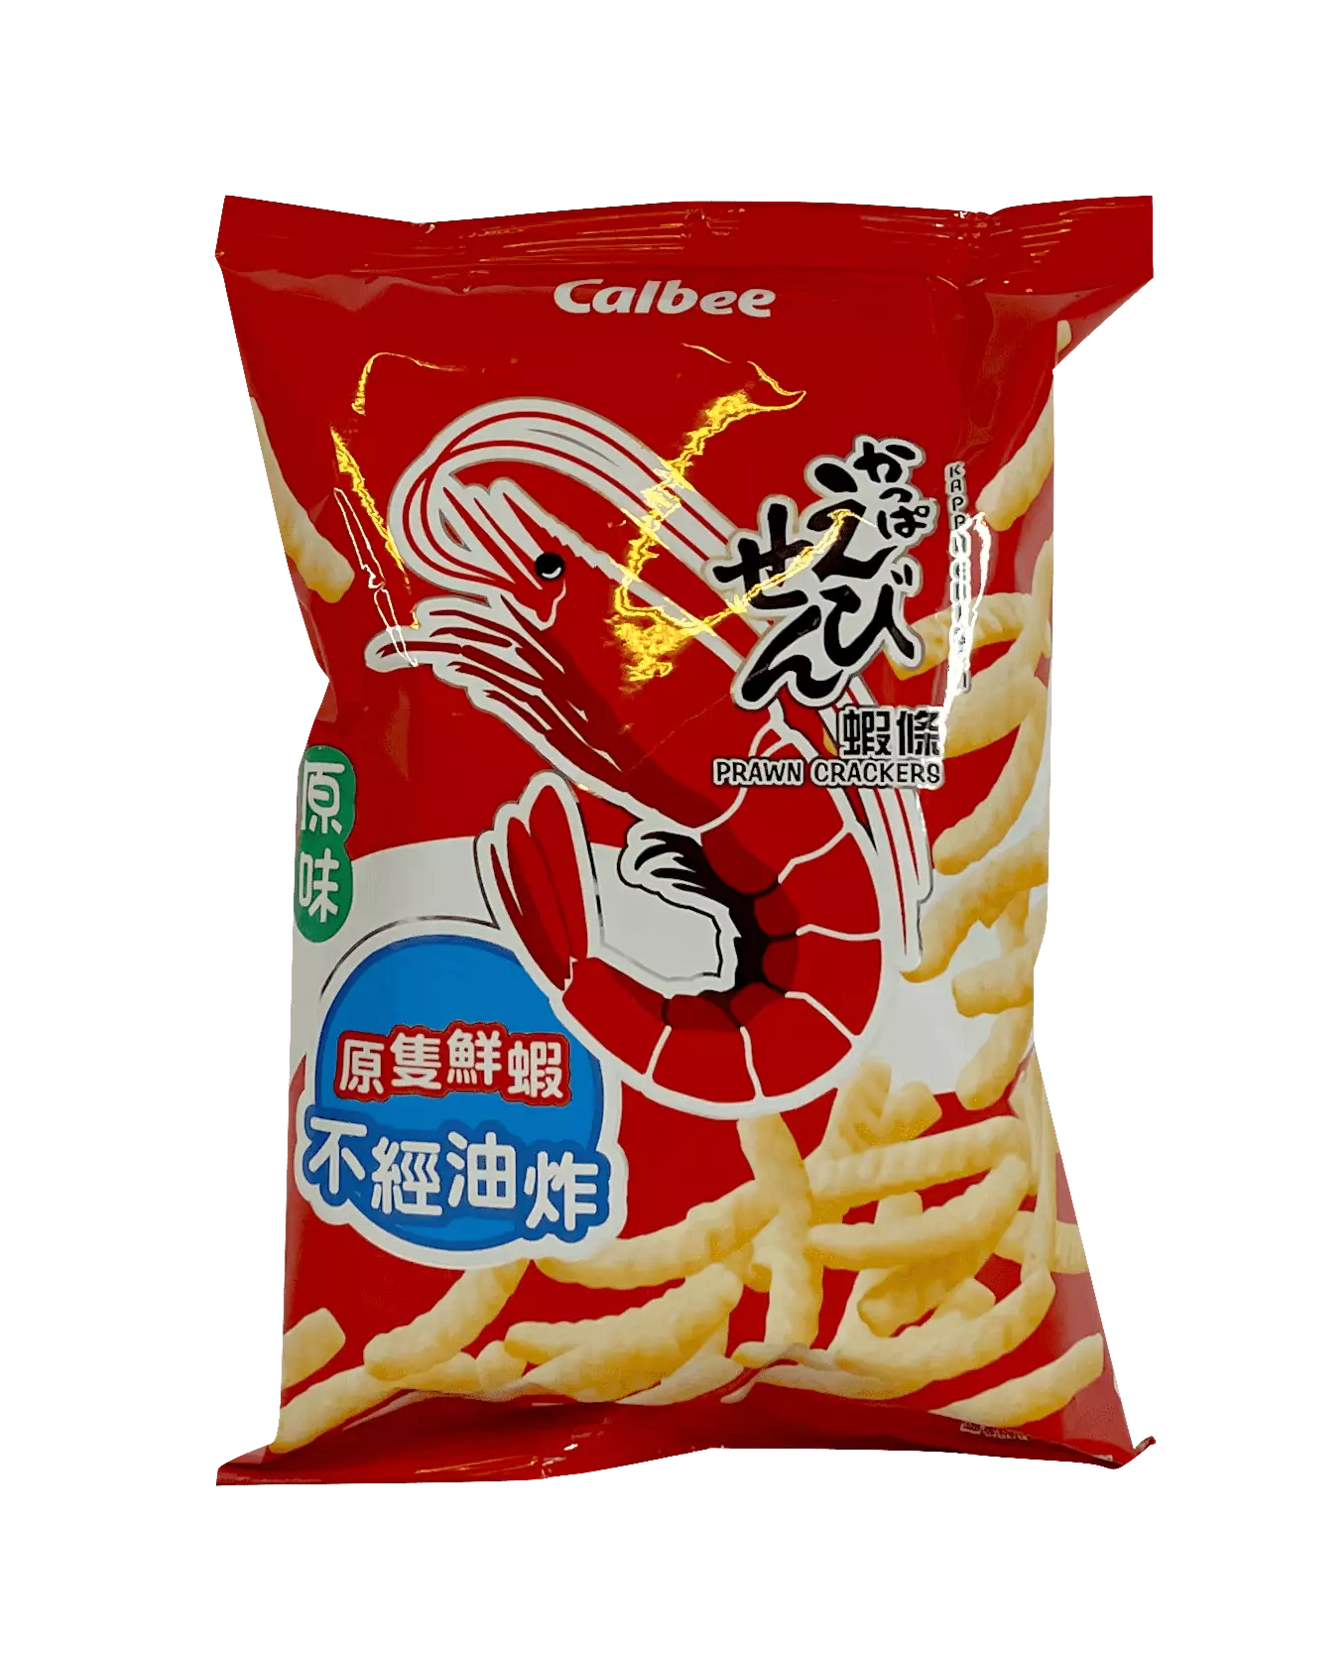 虾条 原味 90g Calbee 中国